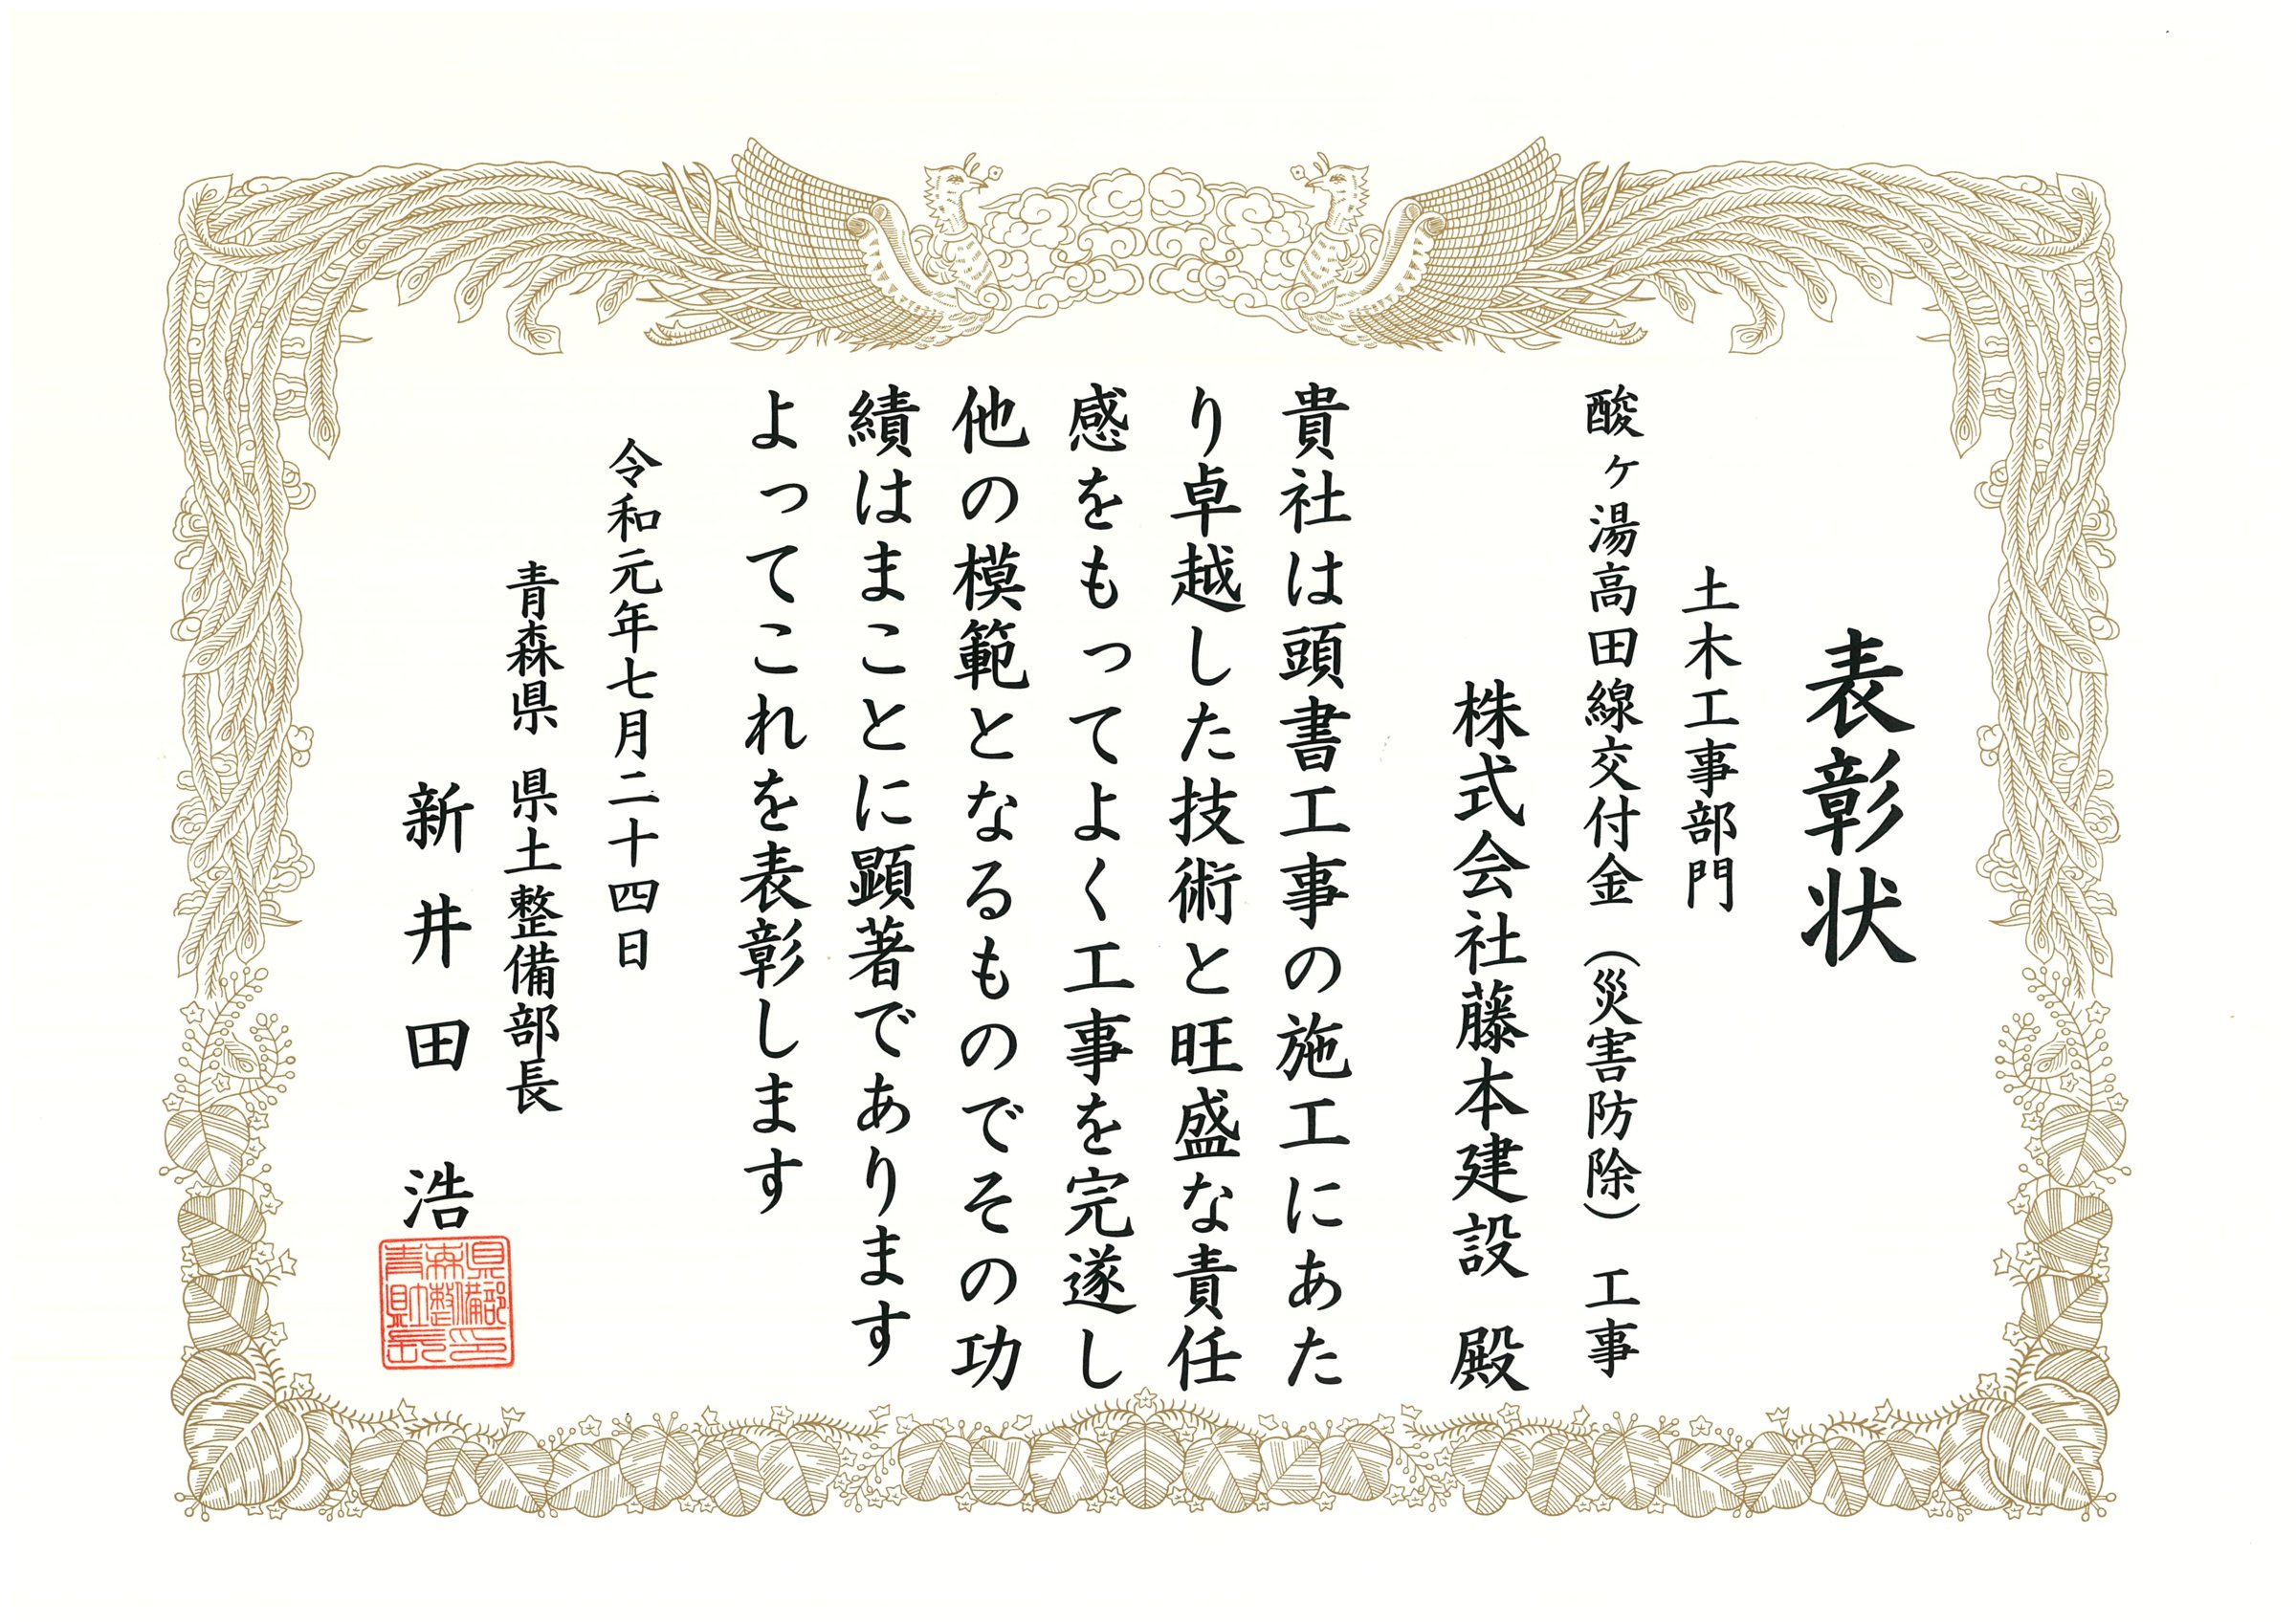 青森県県土整備部より優良工事表彰状をいただきました。